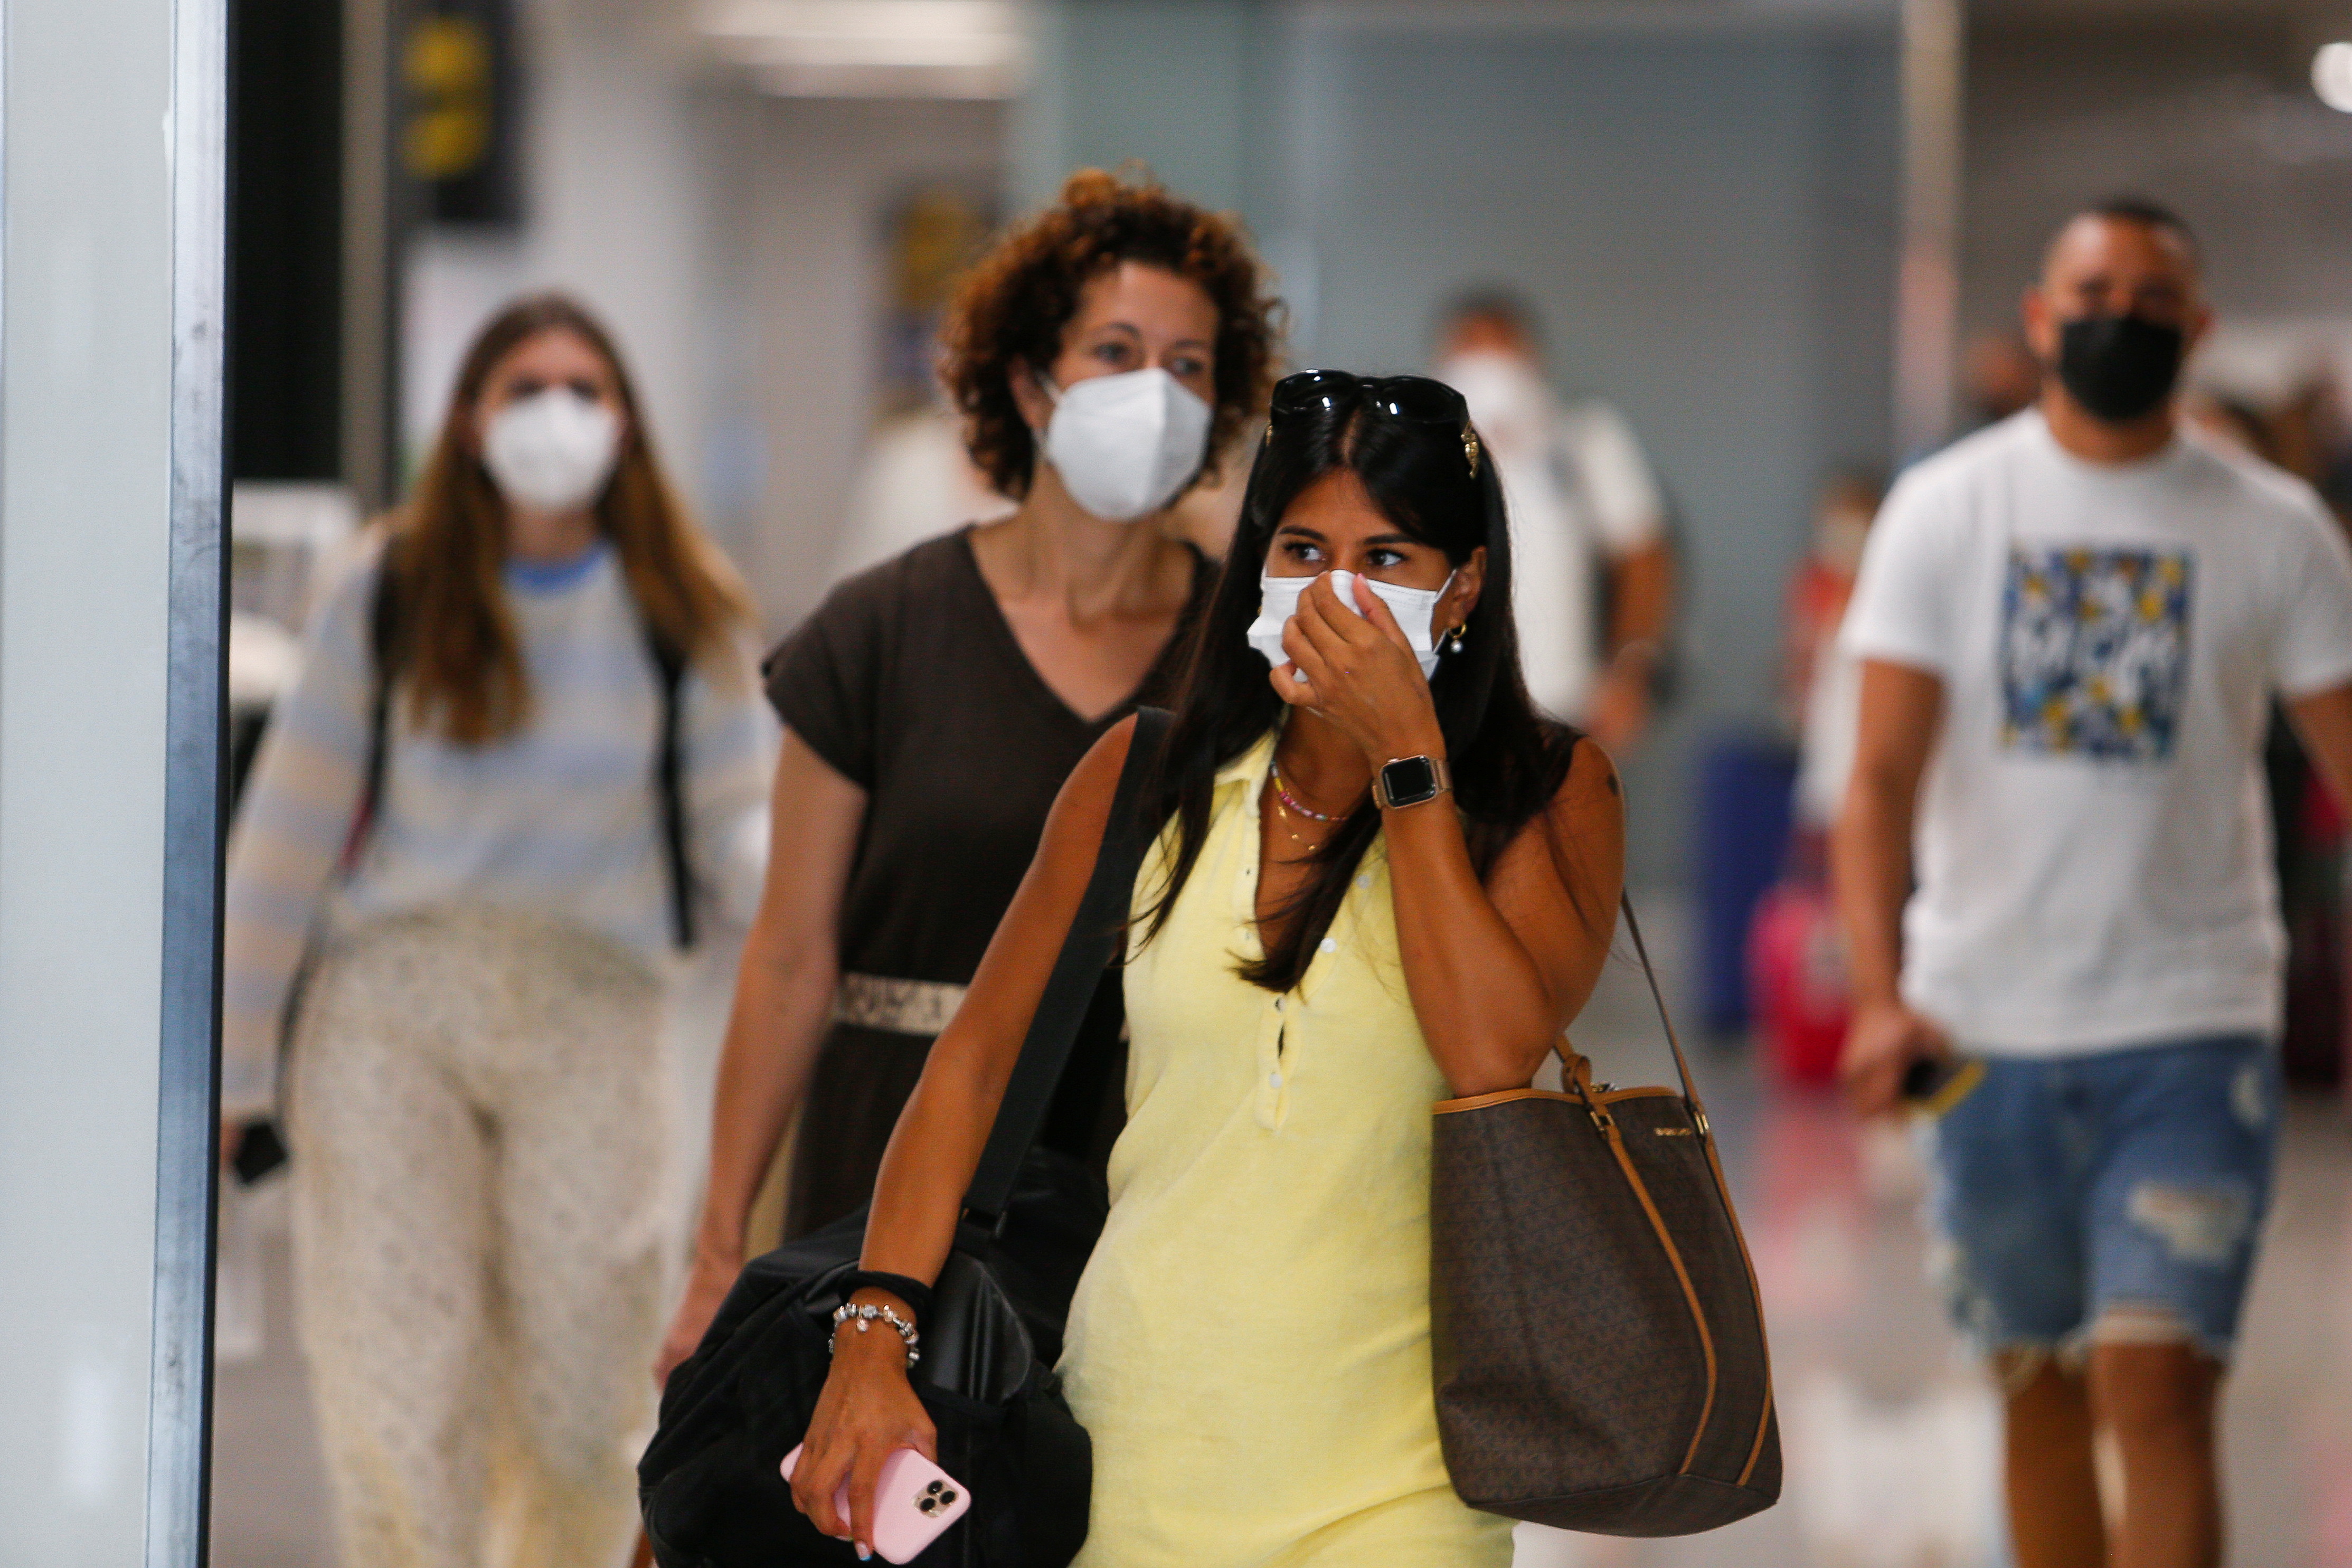 The coronavirus disease (COVID-19) pandemic in Palma de Mallorca